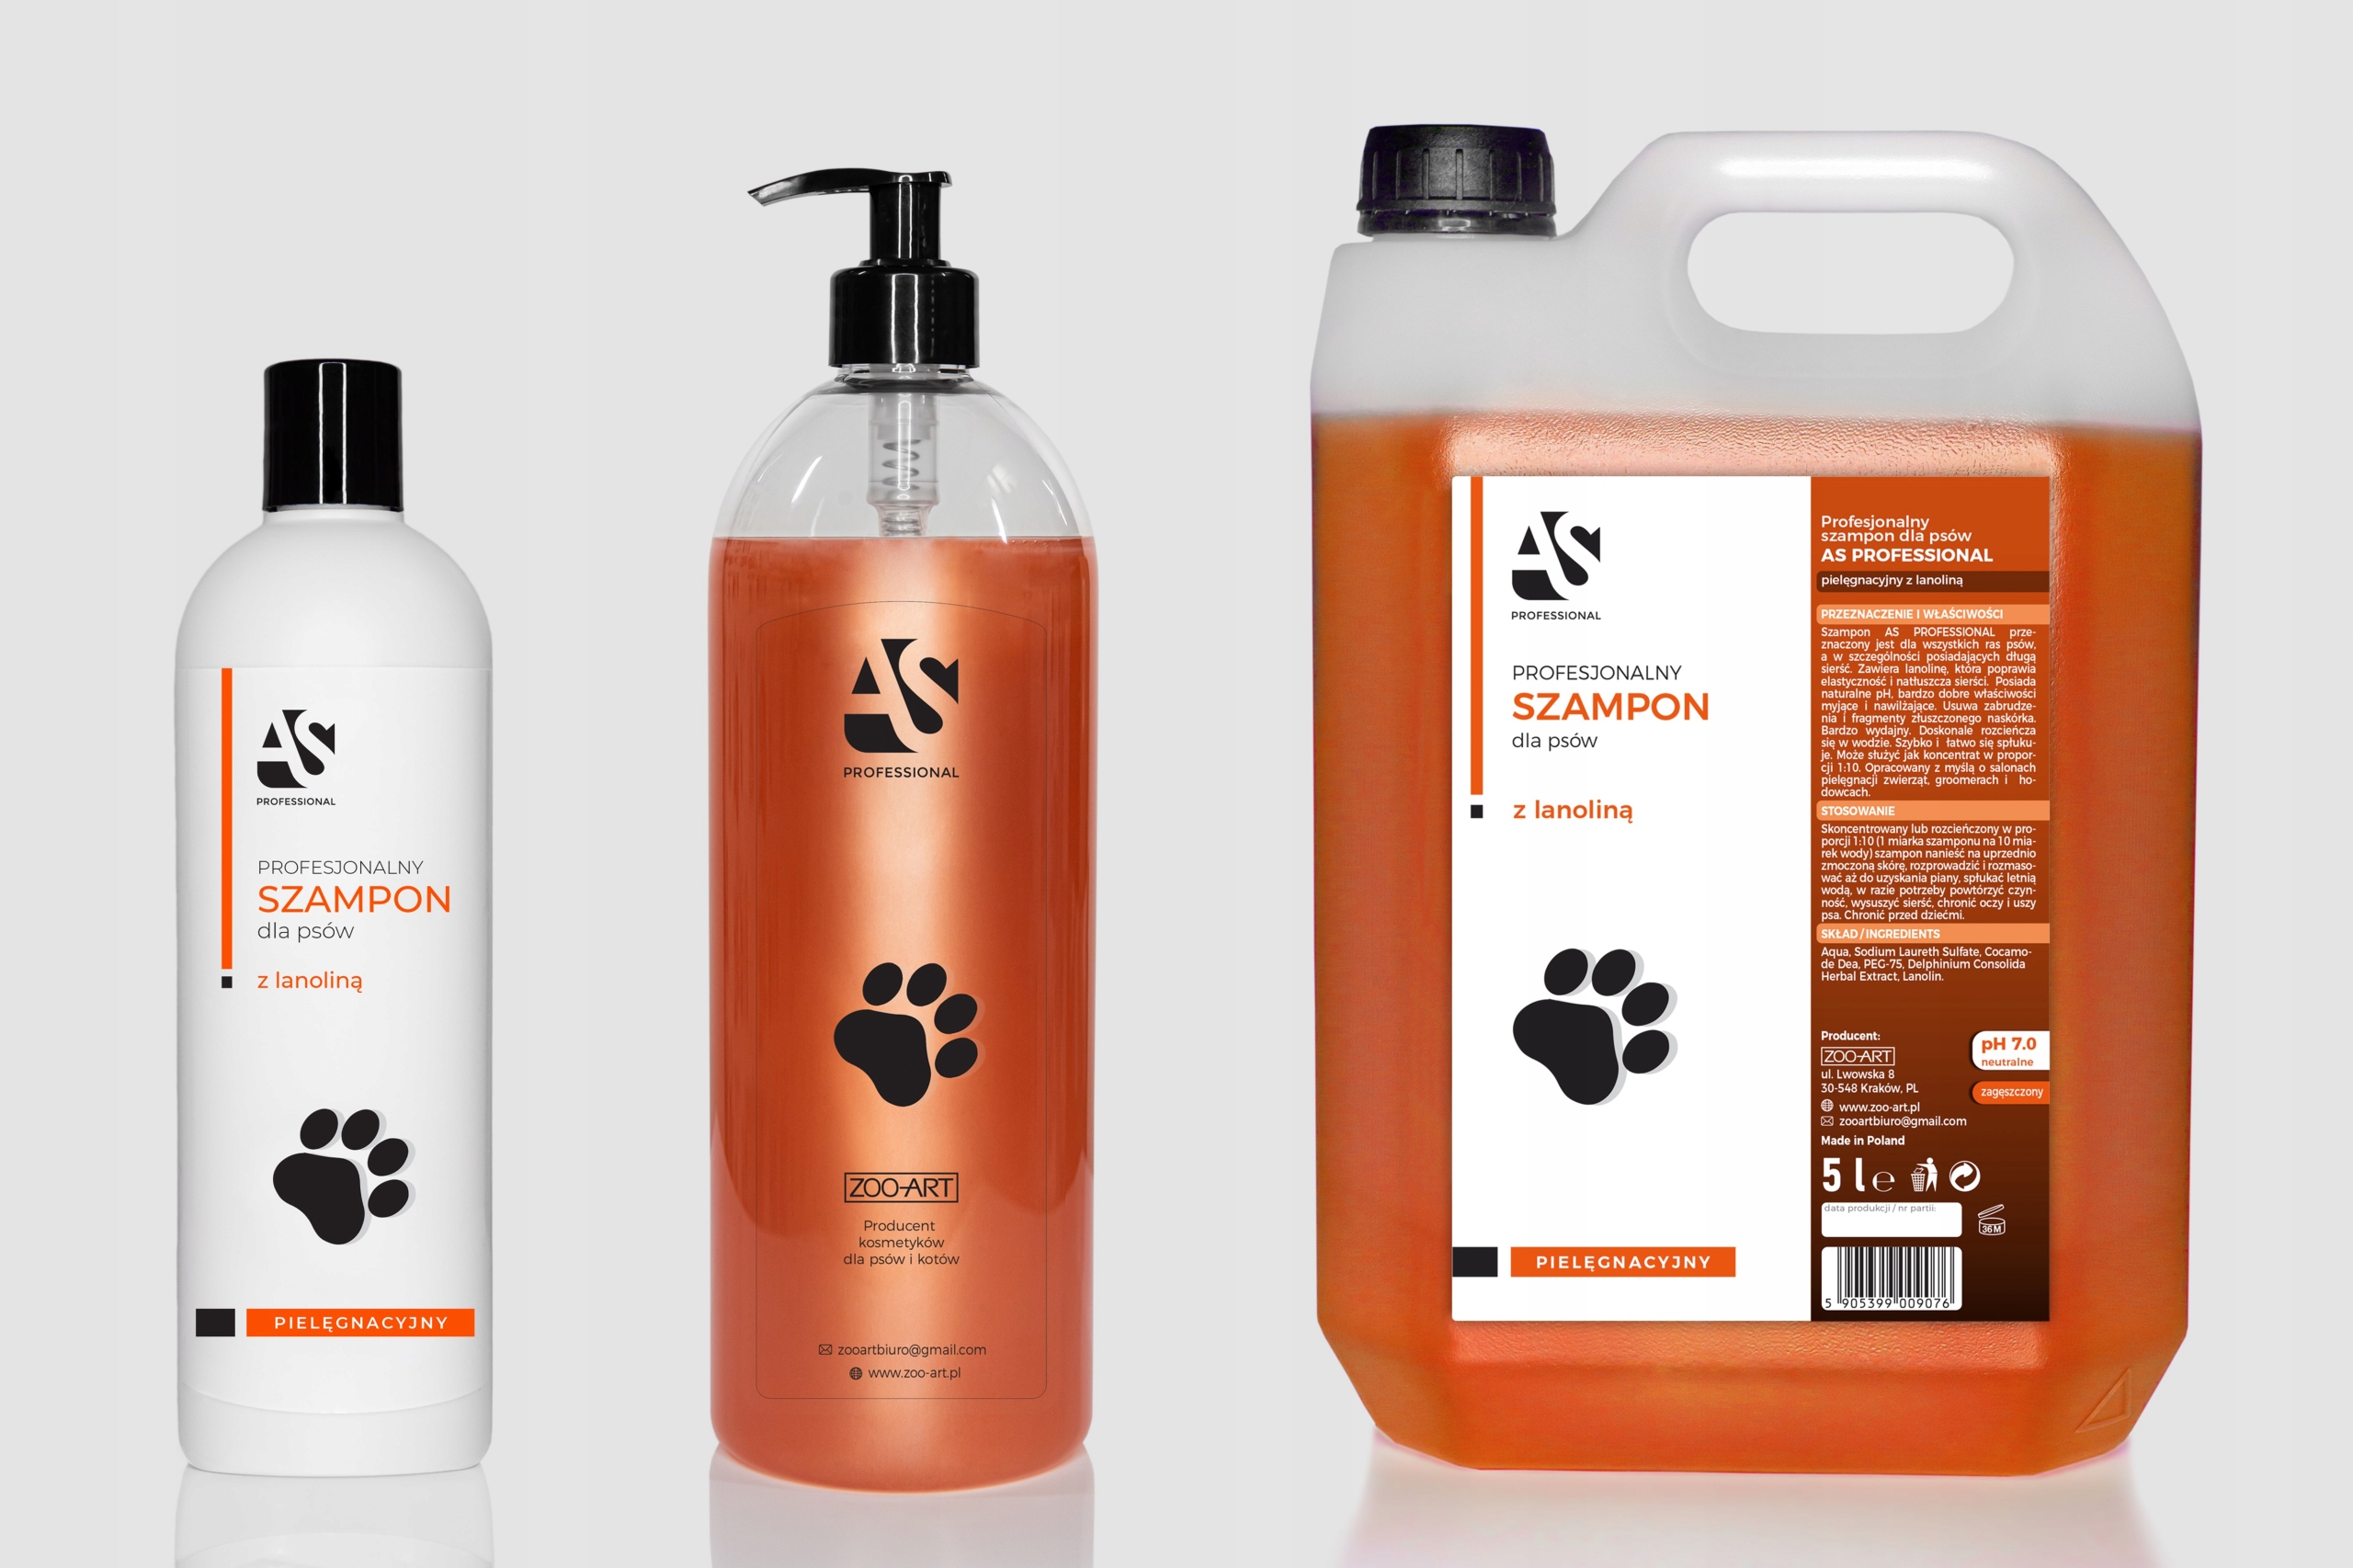 szampon z lanoliną dla psów